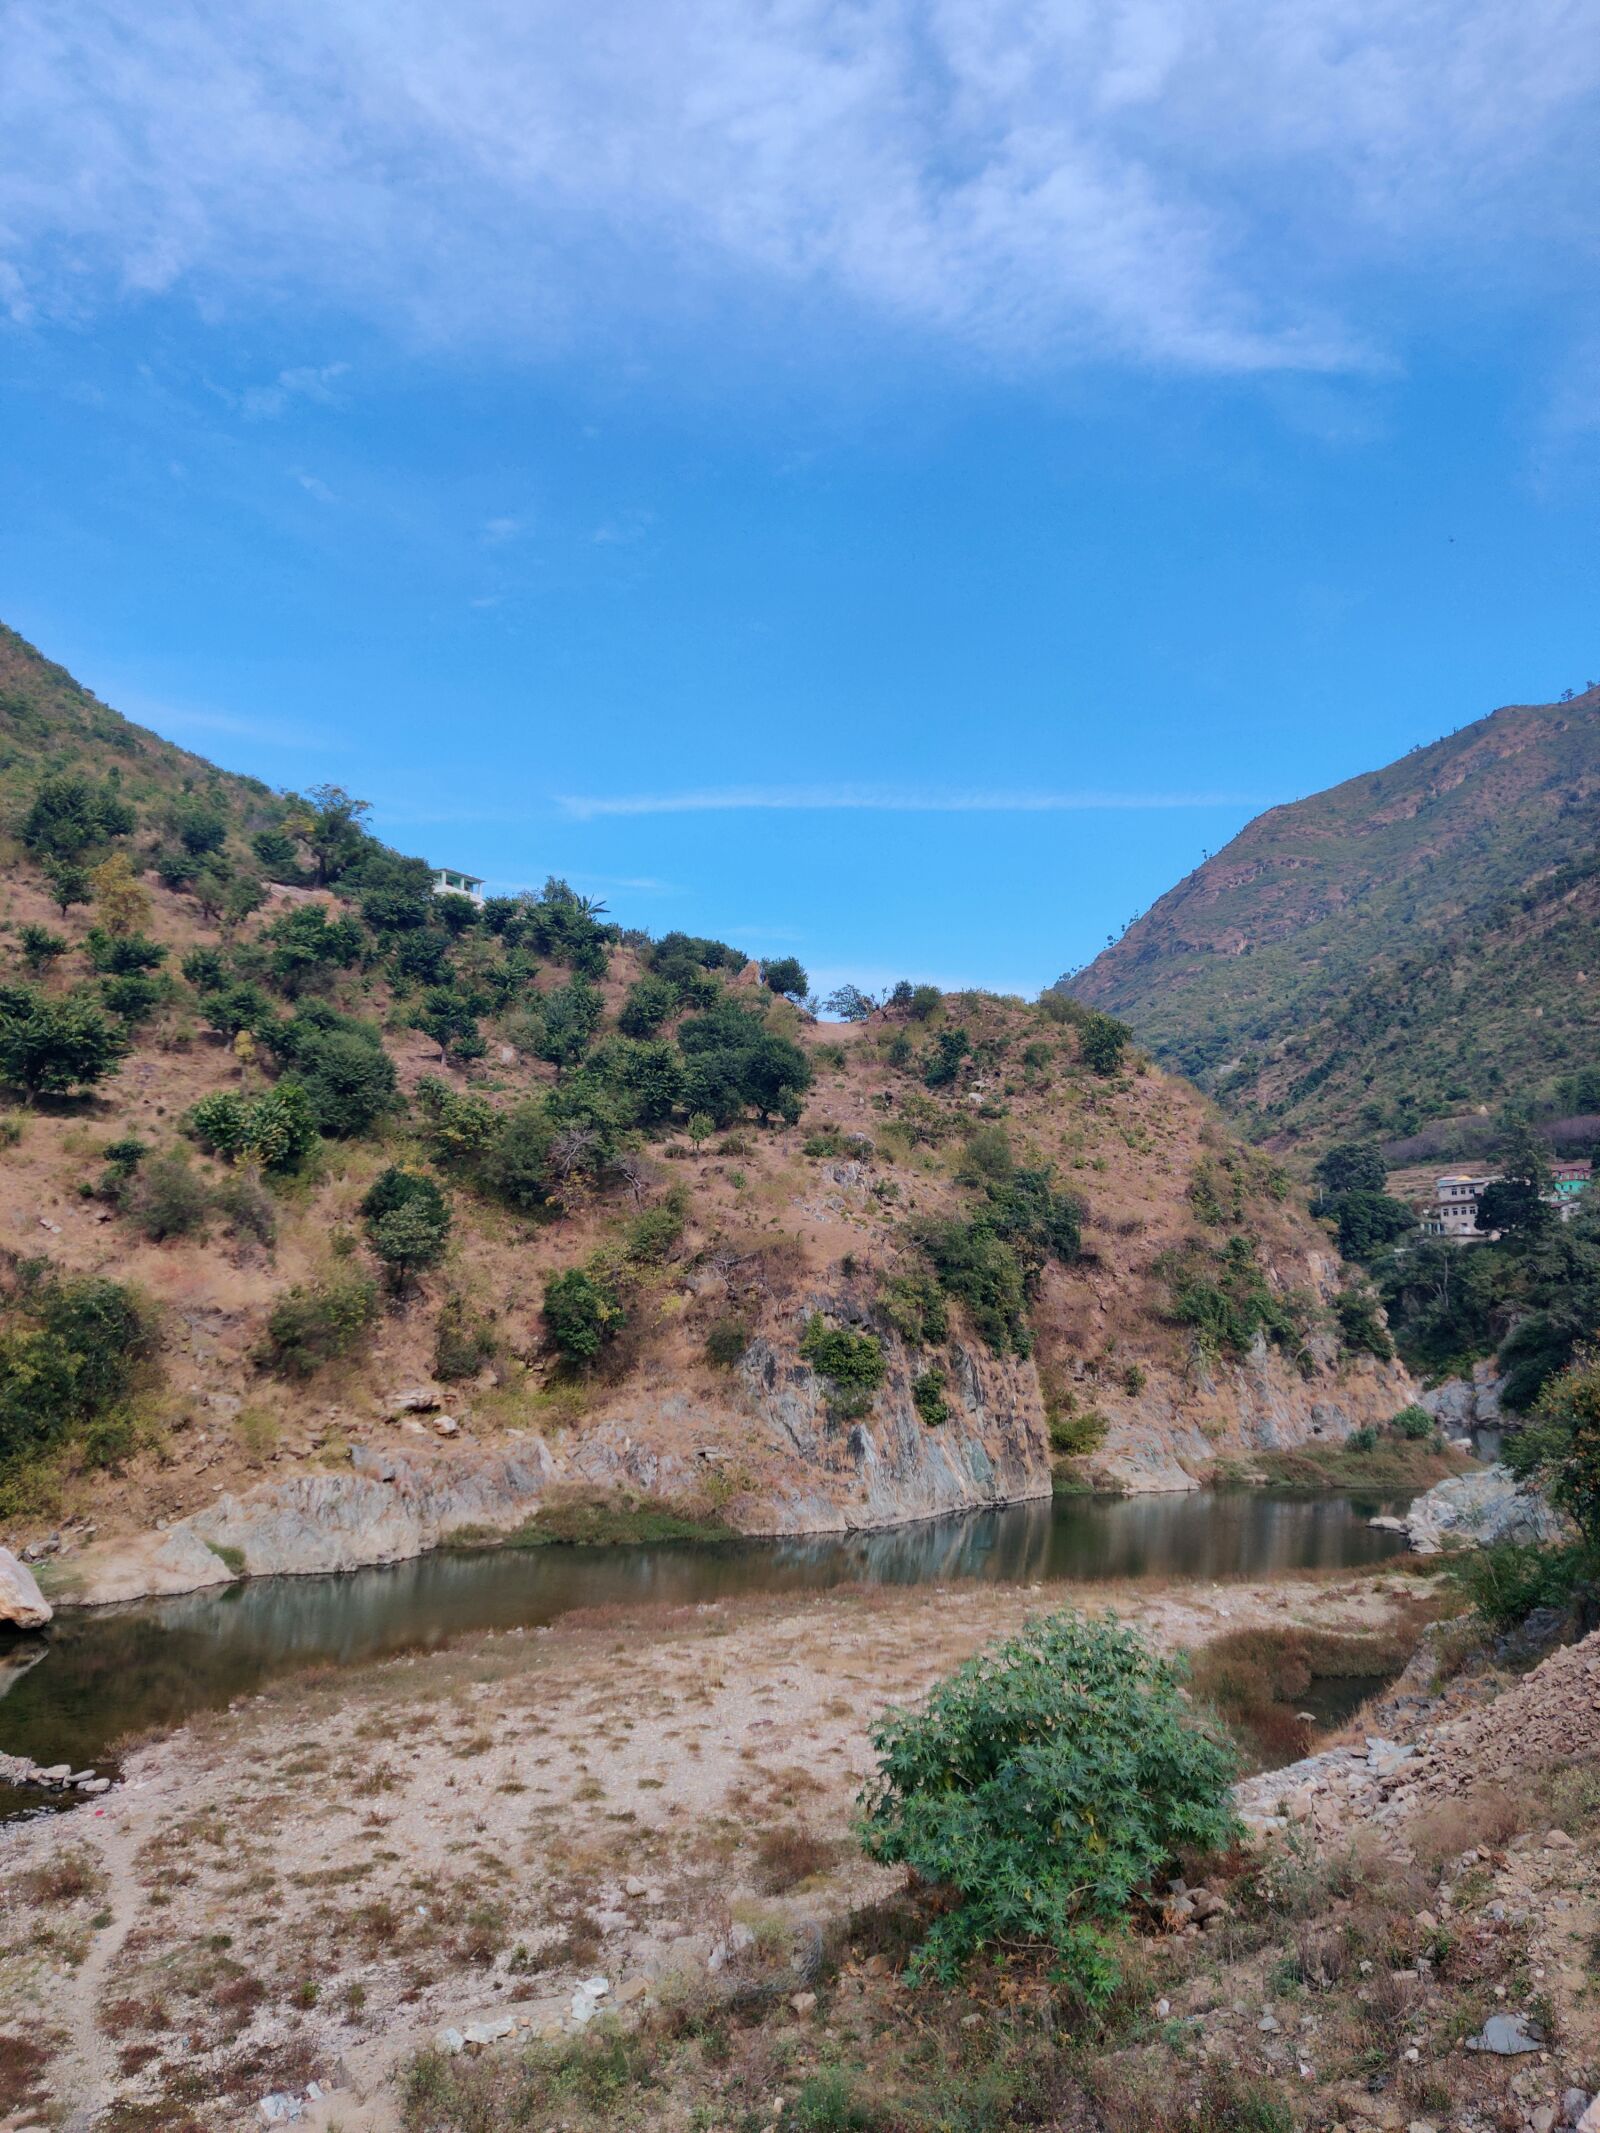 OnePlus GM1901 sample photo. Uttarakhand, india, mountains photography